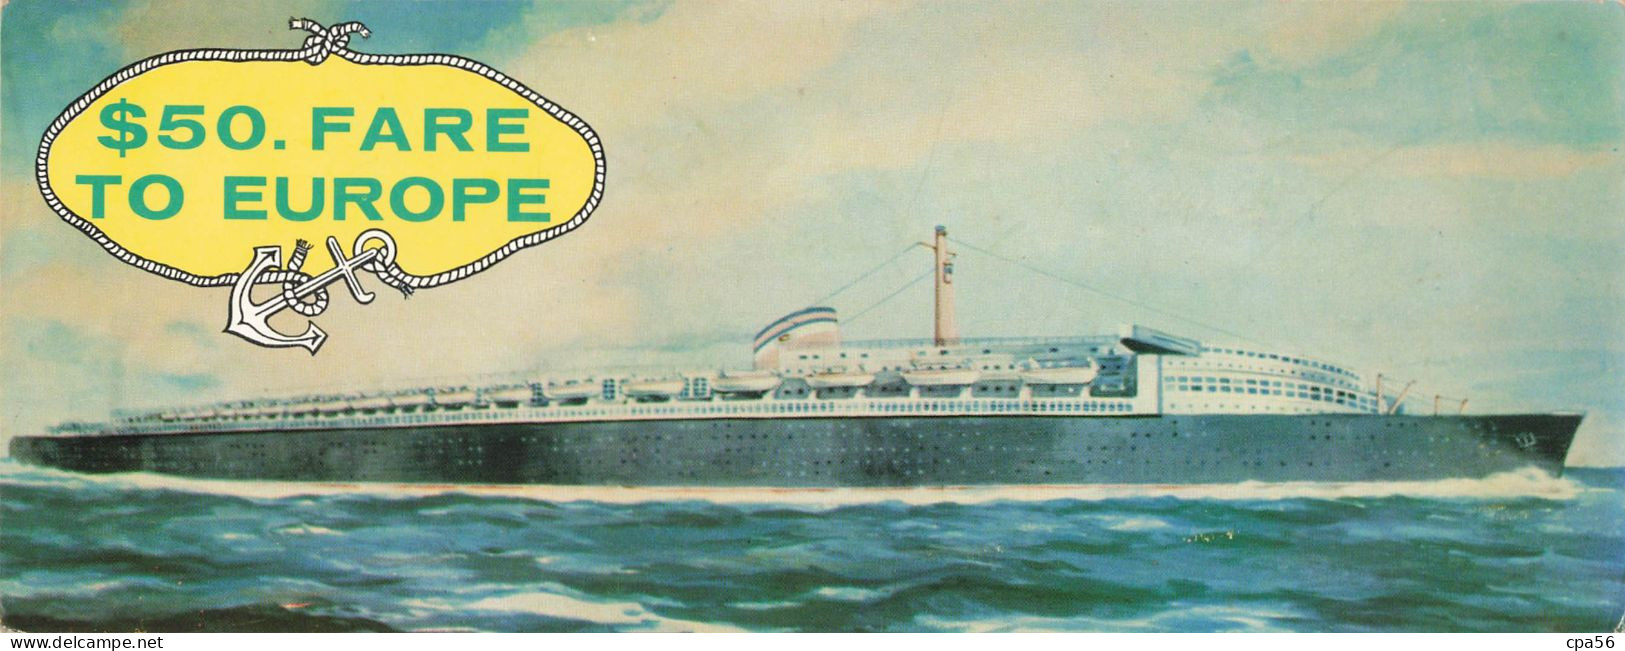 CARTE DOUBLE PANORAMIQUE PAQUEBOT - Publicité Sea Coach Transatlantic Lines - $50. FARE TO EUROPE - Hotel Dixie - Publicité